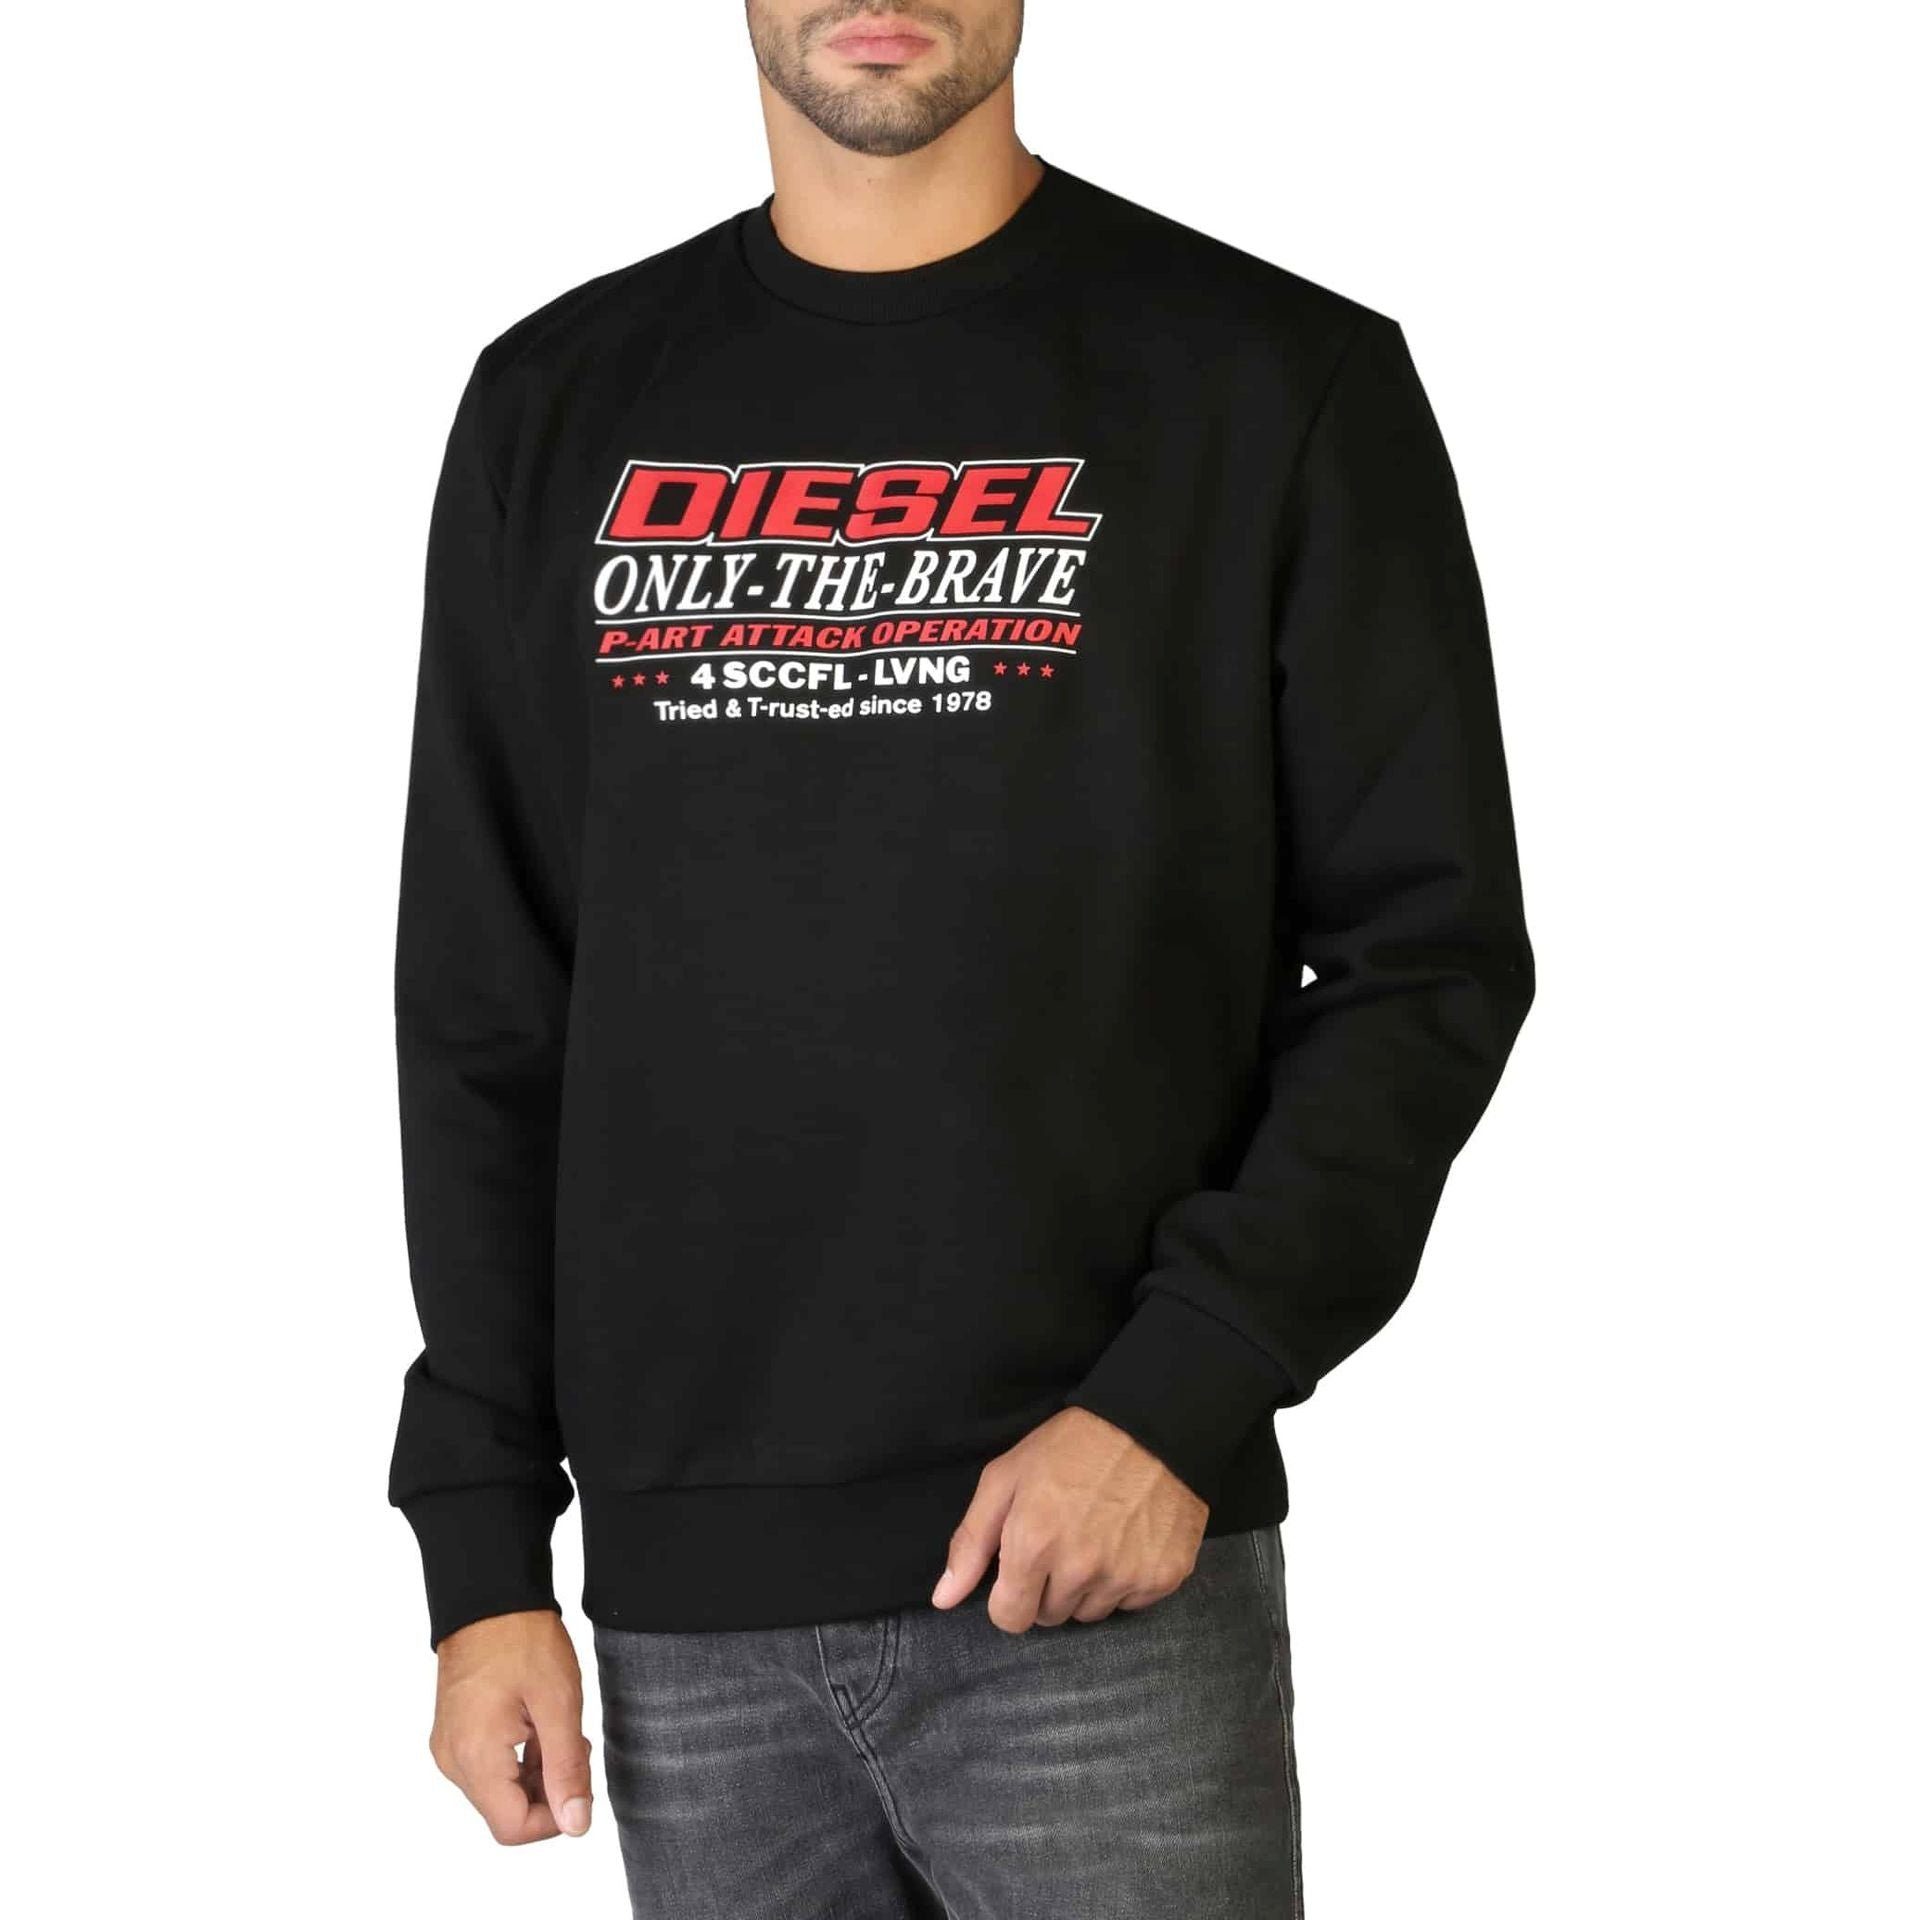 Diesel Sweatshirt Diesel Herren Sweatshirt mit Rundhalsausschnitt, Schwarz Komfort und Stil - Ihr neues Diesel Sweatshirt wartet!